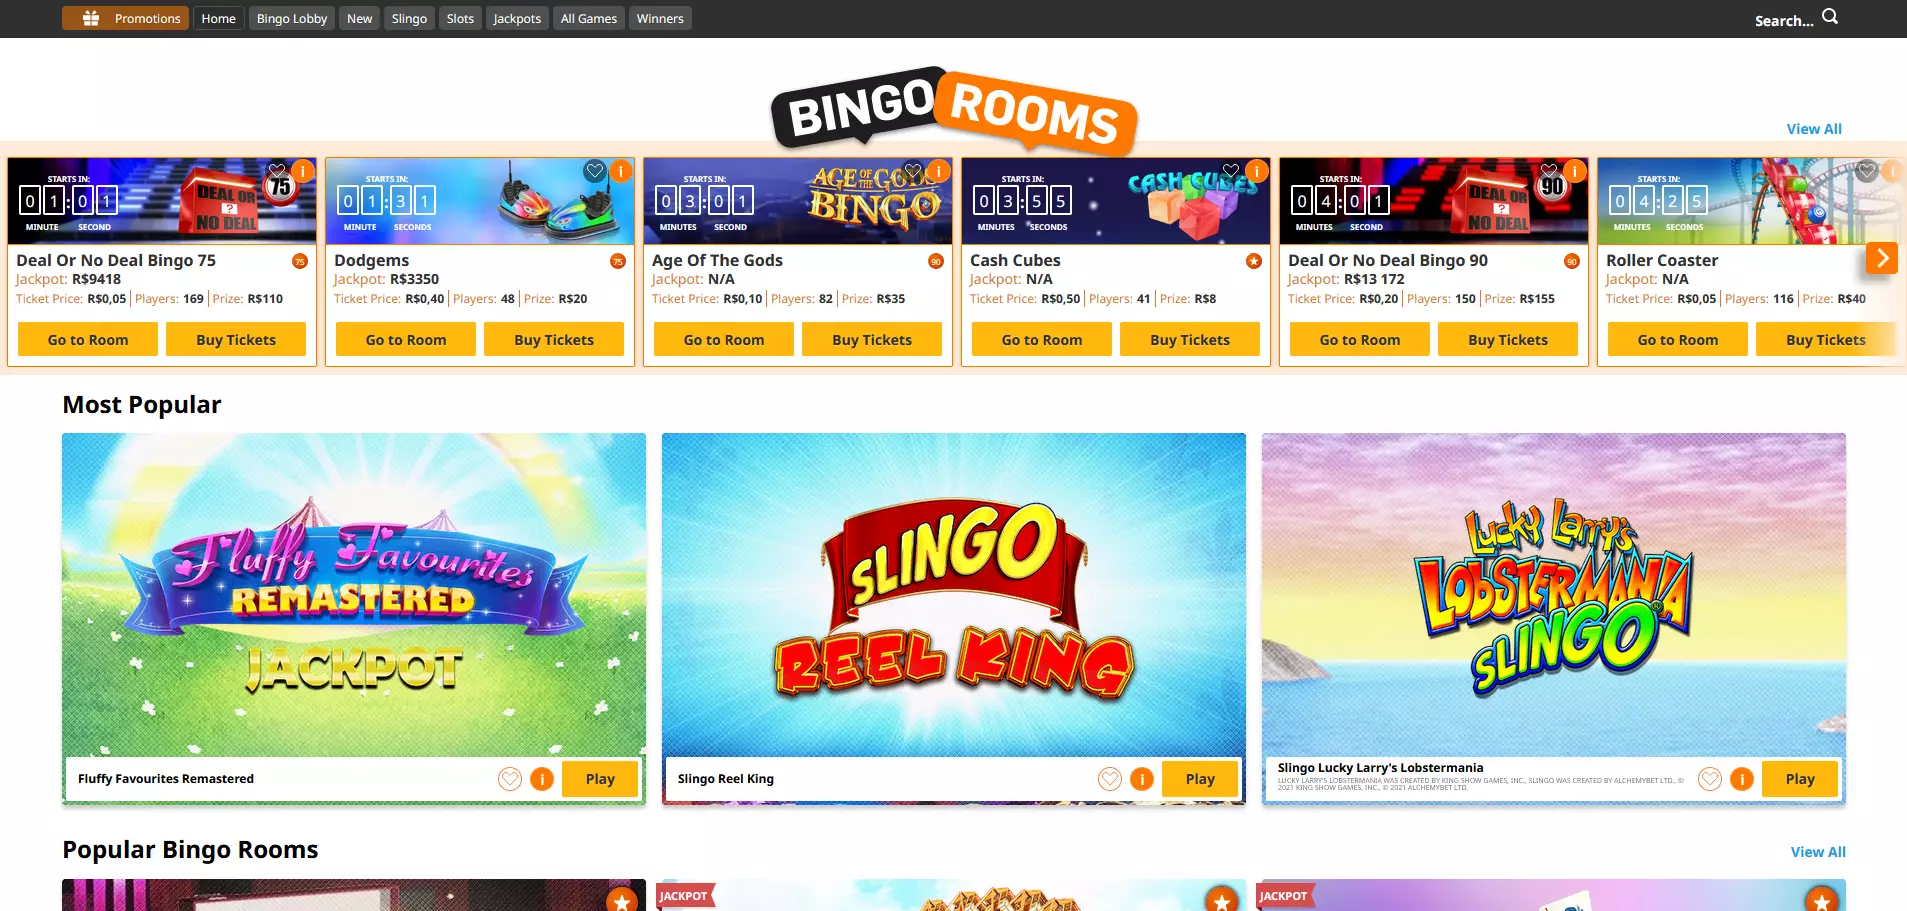 Bingo Online: jogue agora mesmo com bônus grátis - JBLOG - JOGOS AO VIVO,  NOTÍCIAS E ENTRETENIMENTO